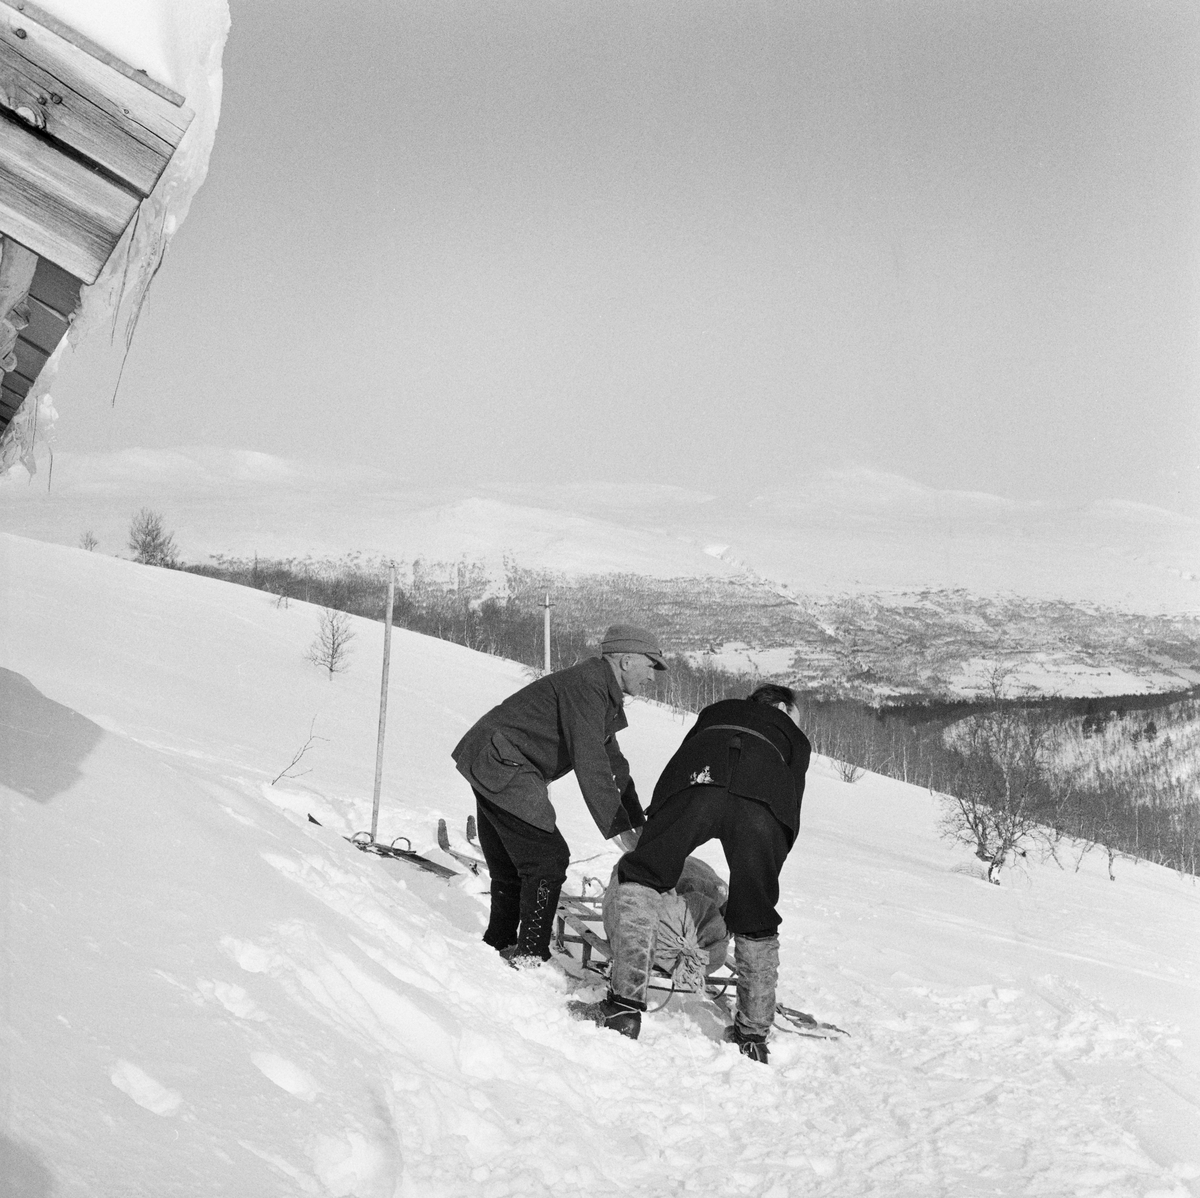 Snarefangst etter rype, Lesja i mars 1968. Transport av ryper med skikjelke. T.v. Ola Bergene fra Bjorli, t.h. Edvard Dorseth, Lesjaverk.